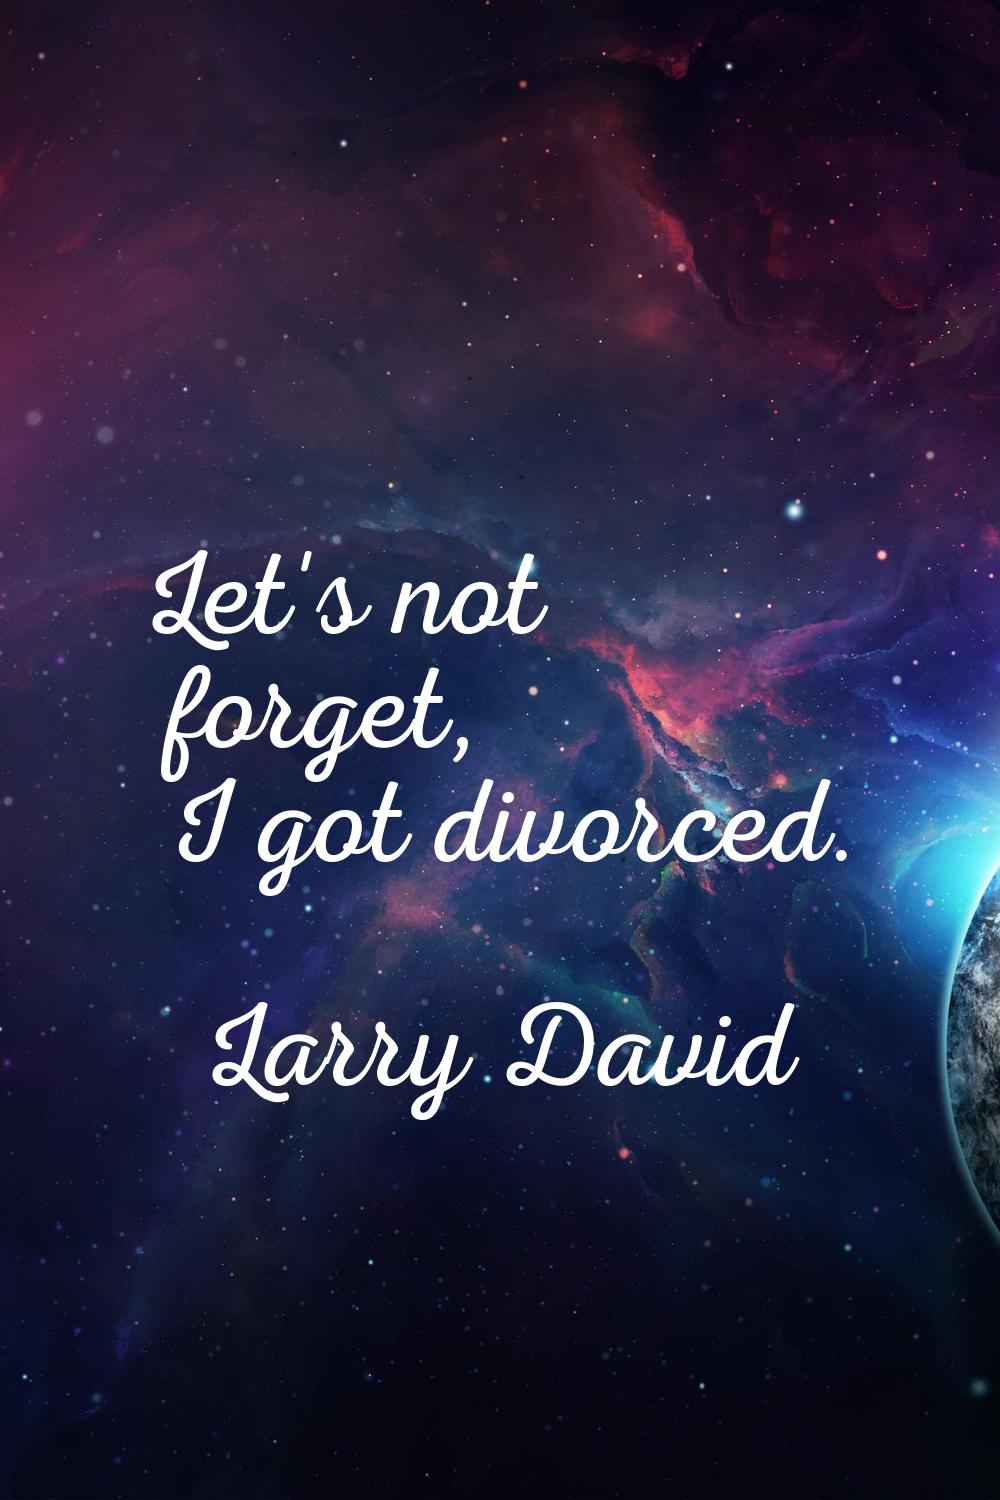 Let's not forget, I got divorced.